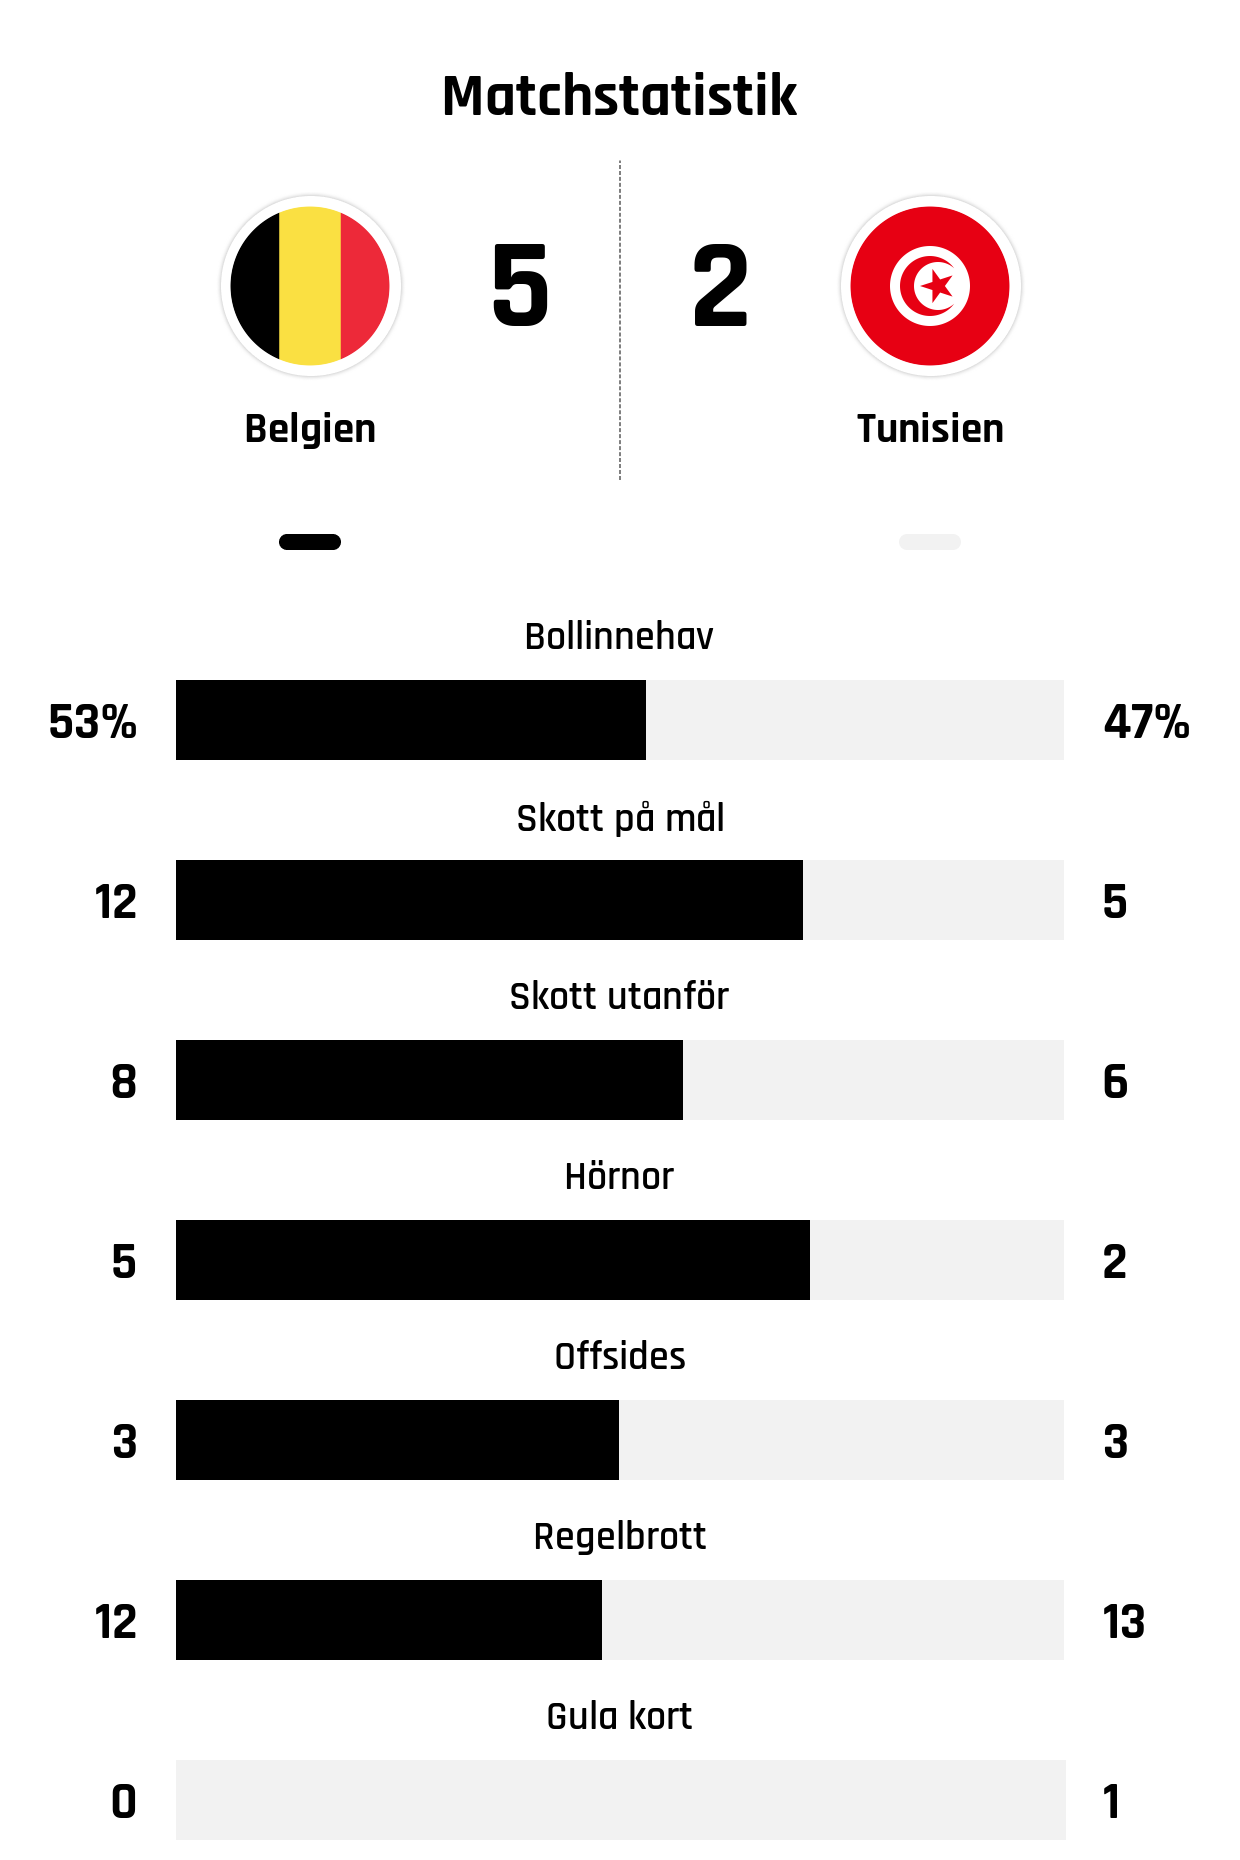 Bollinnehav 53%-47%
Skott på mål 12-5
Skott utanför 8-6
Hörnor 5-2
Offsides 3-3
Regelbrott 12-13
Gula kort 0-1